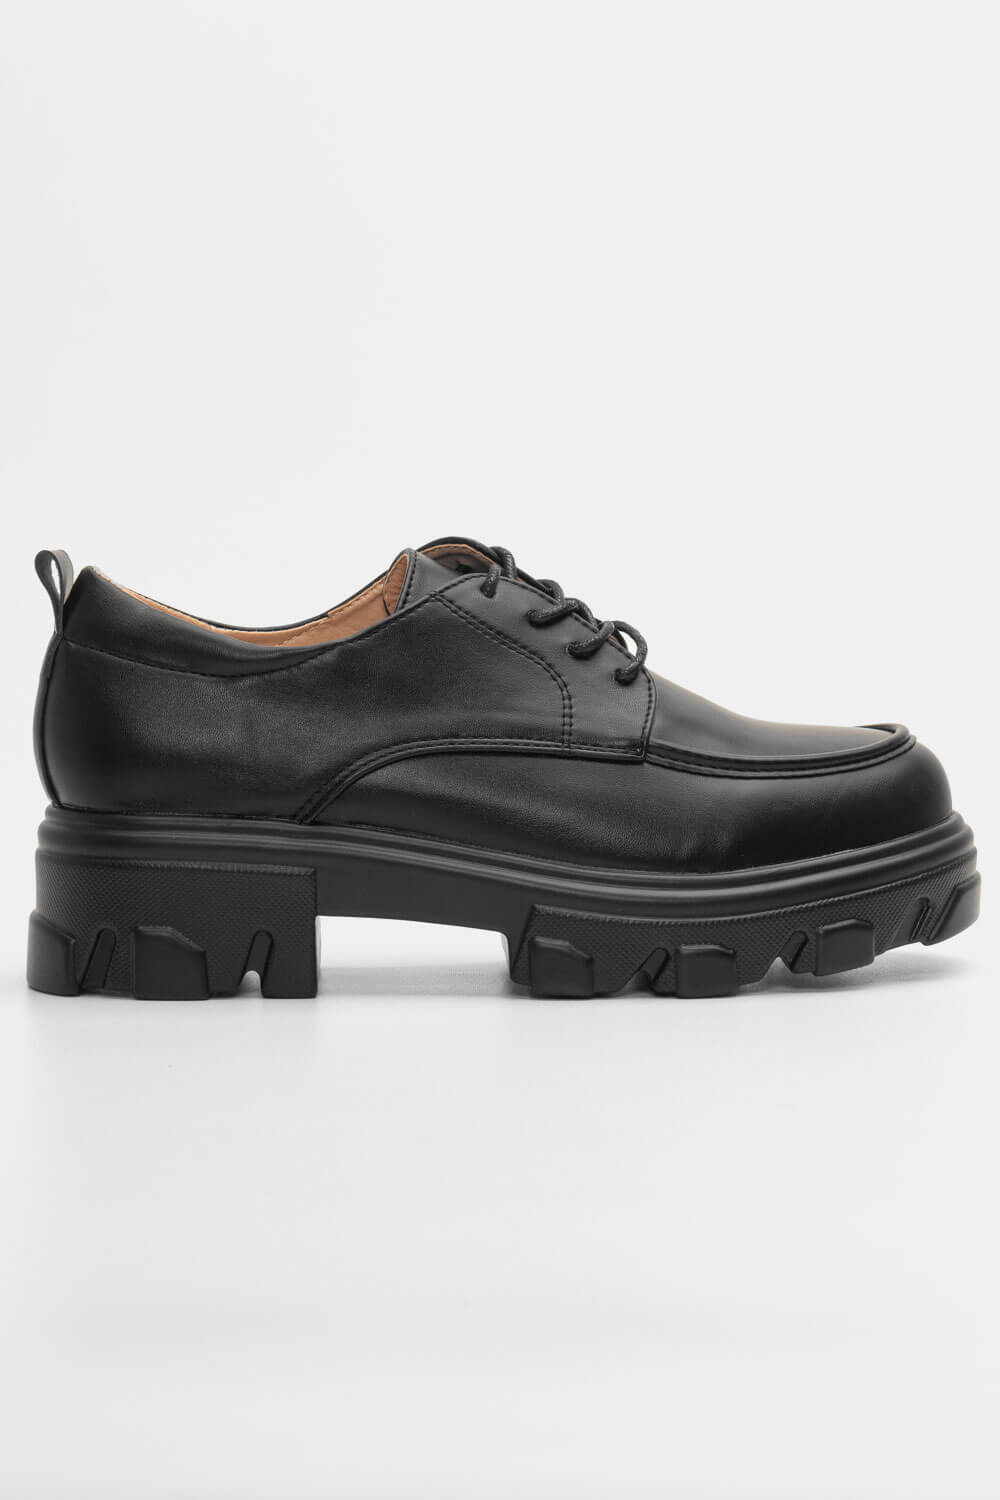 Δετά Παπούτσια με Τρακτερωτή Σόλα - Μαύρο 96335